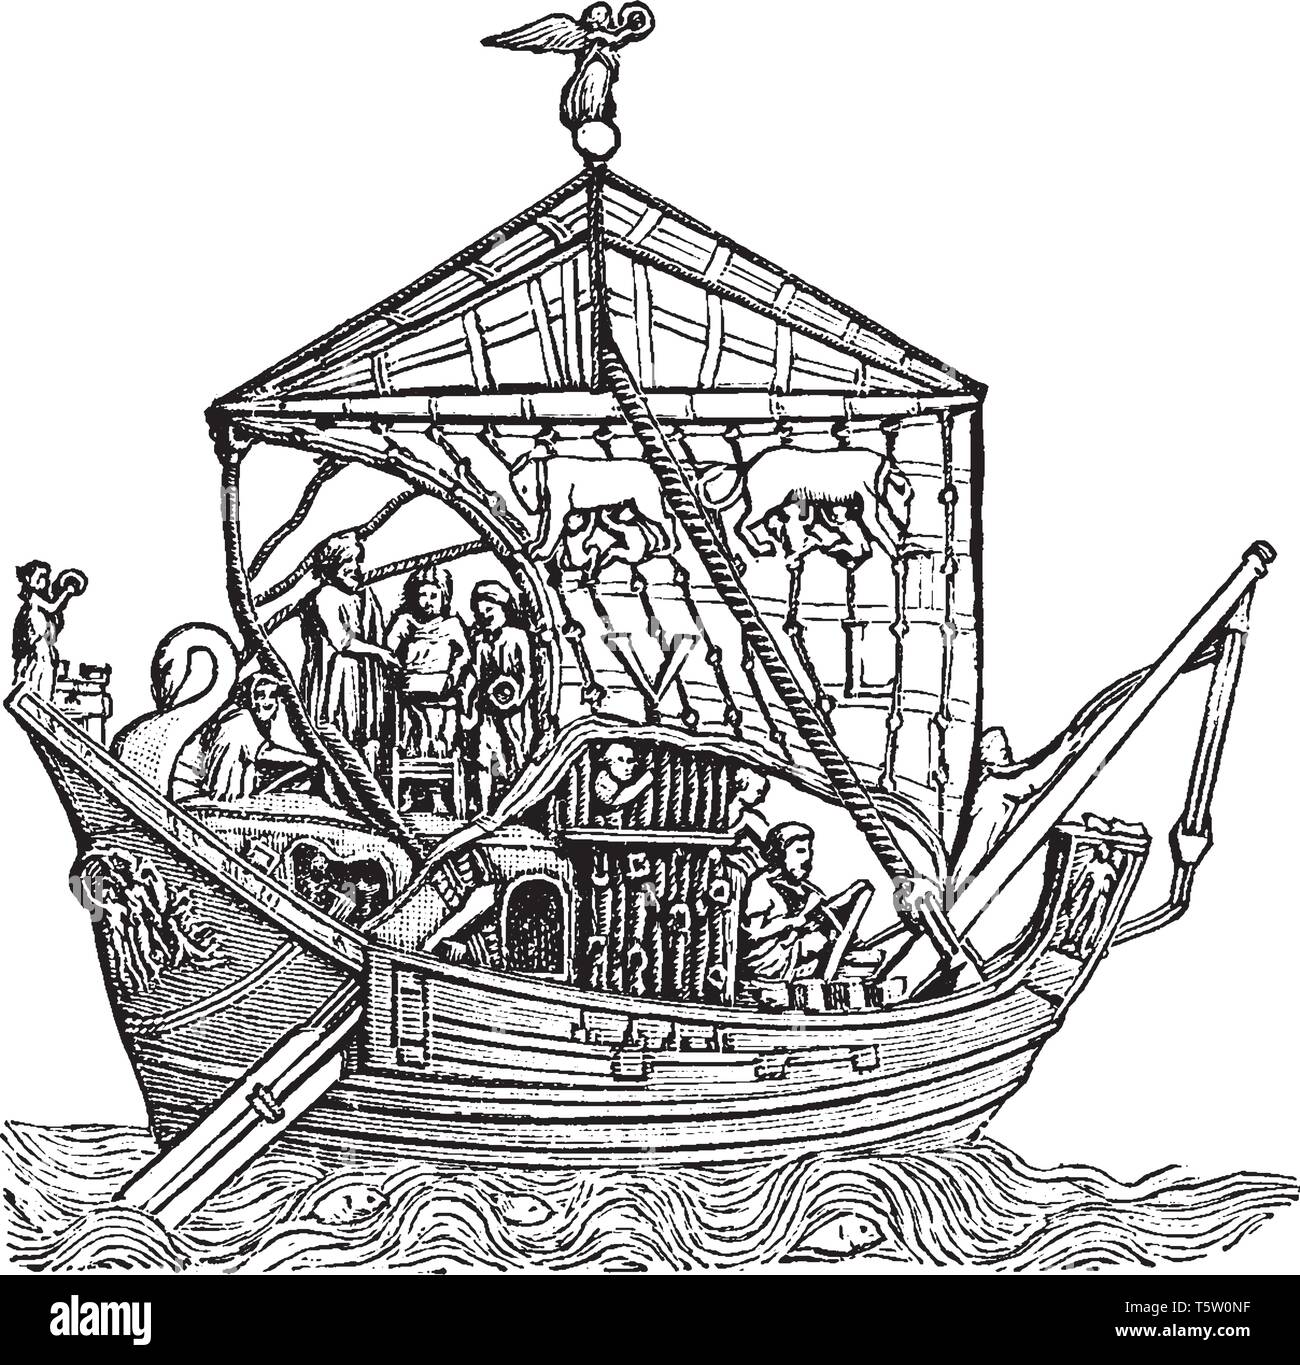 Recipiente di trading è una barca o una nave che trasporta un carico o porta i passeggeri a noleggio, vintage disegno della linea di incisione o illustrazione. Illustrazione Vettoriale